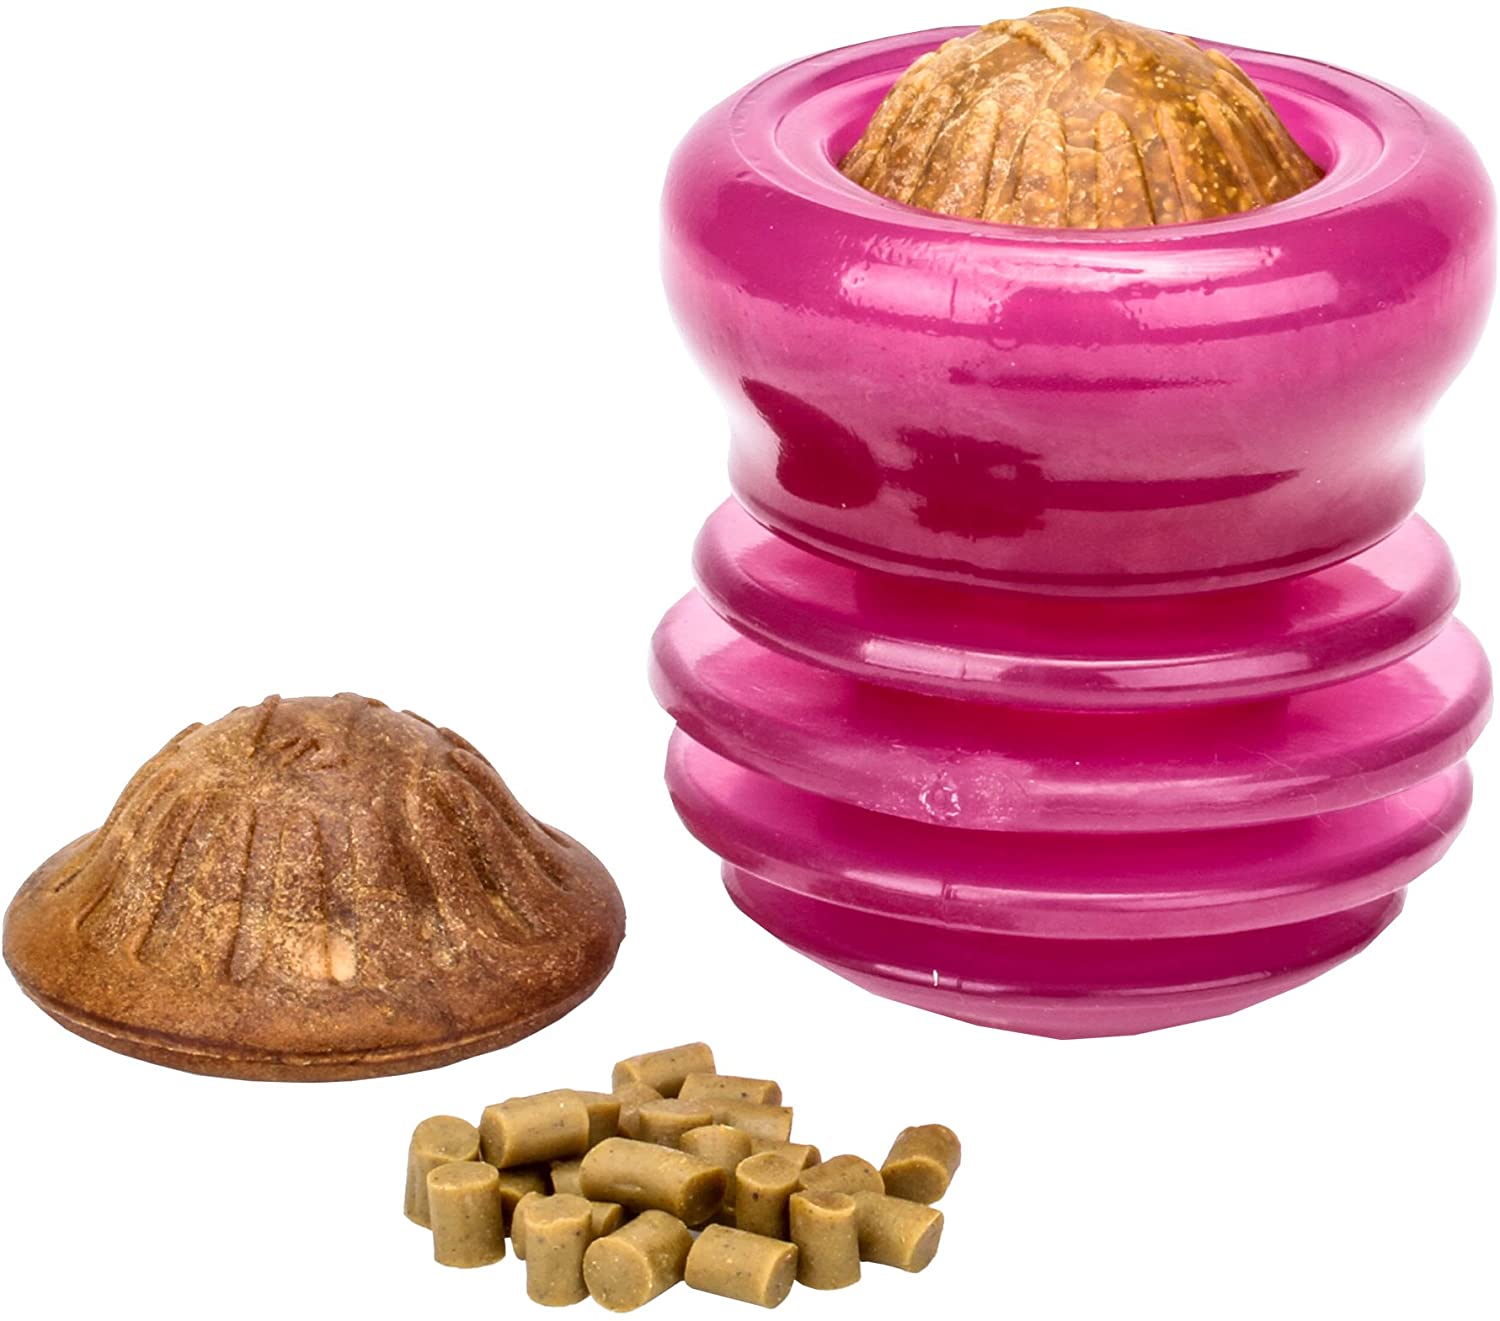  Tasty Prize - Juguete de goma para perros con diseño de goma, dispensador de grandes tratamientos y patucos, 10 cm x 13 cm 